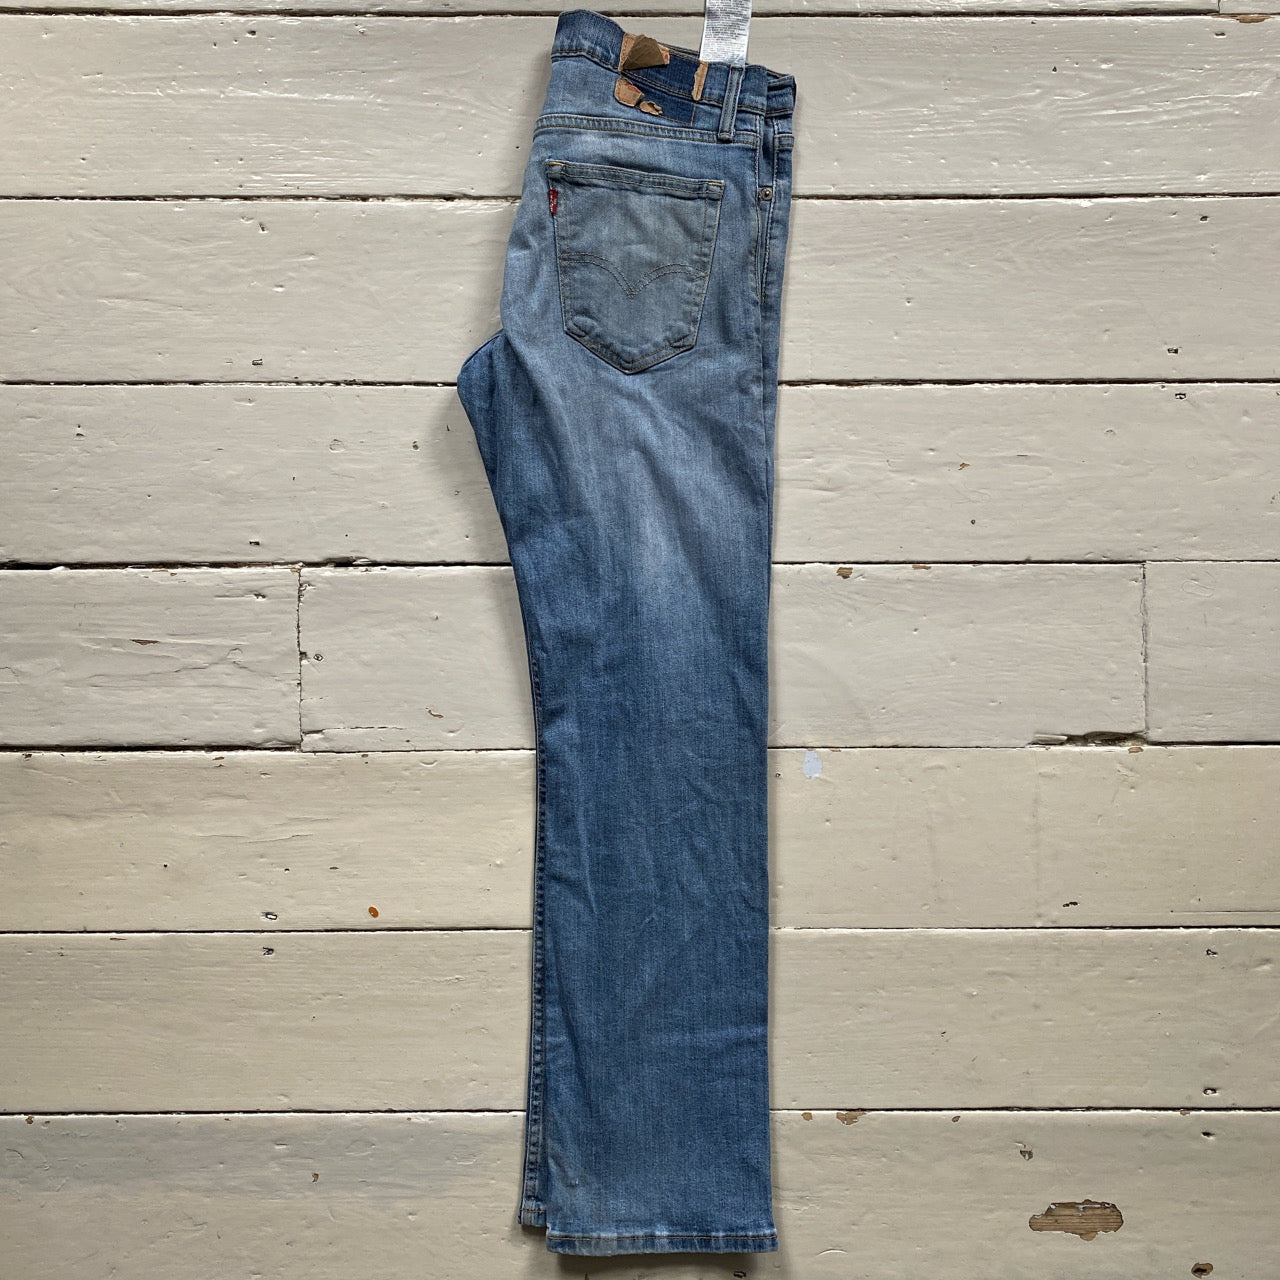 Levis 511 Light Slim Fit Jeans (34/30)